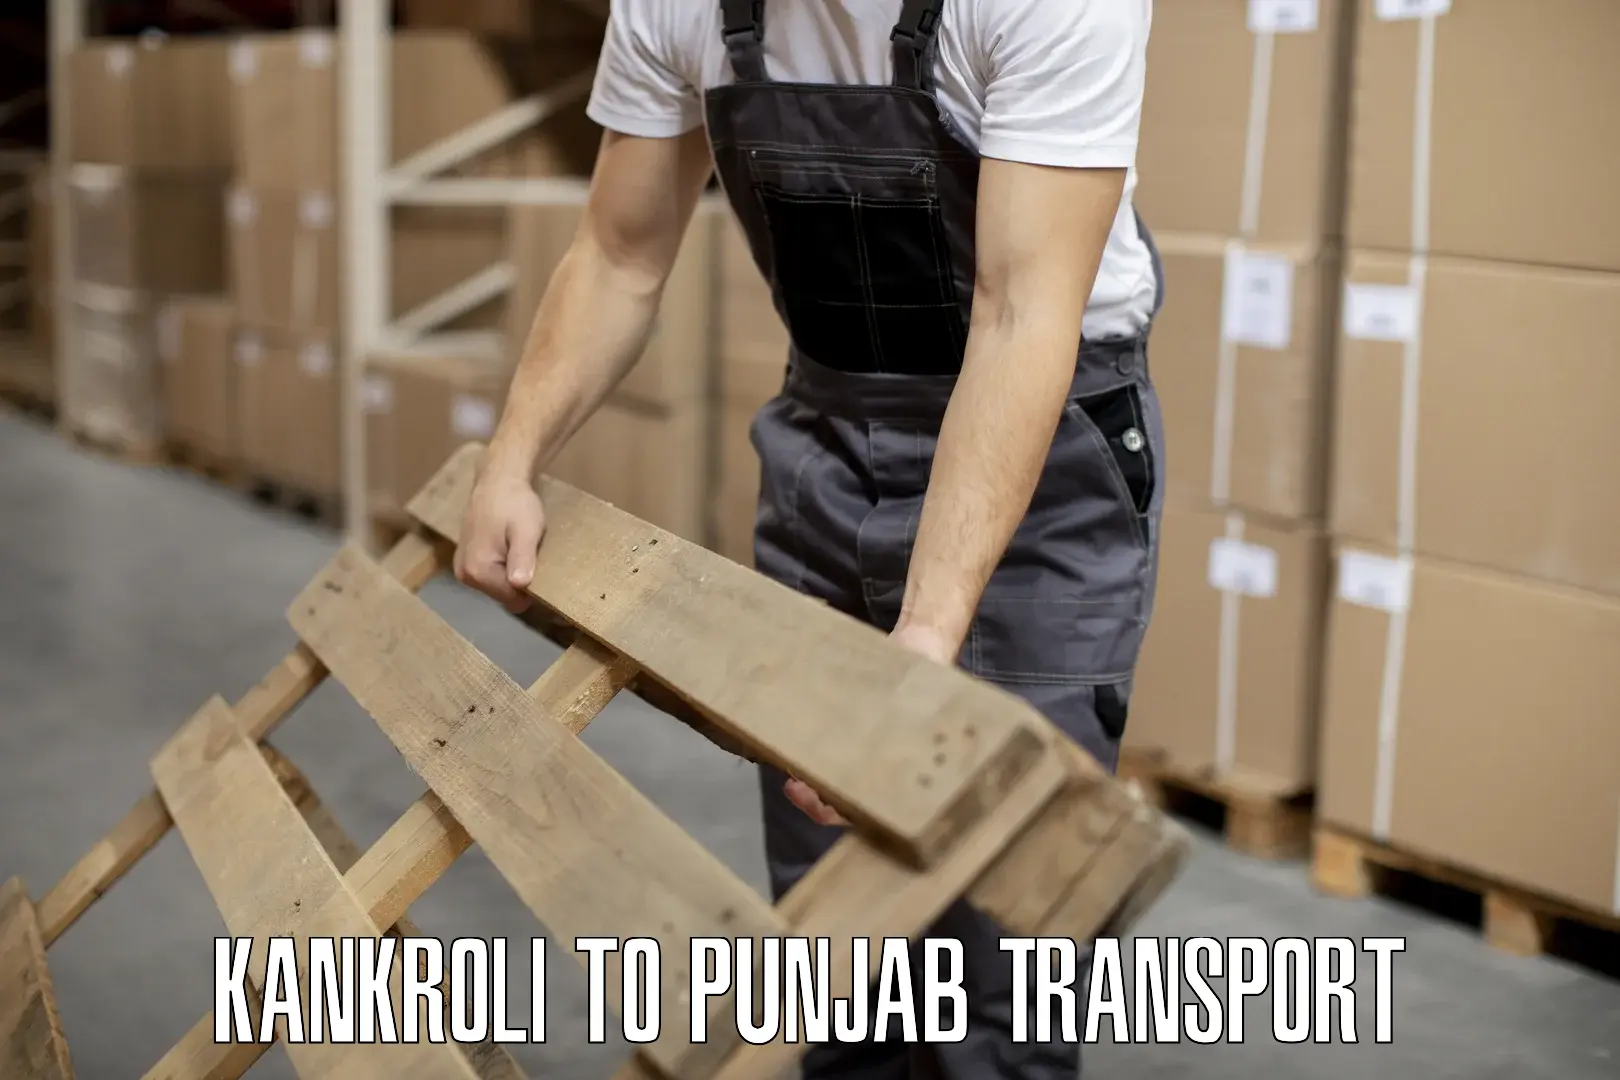 Delivery service Kankroli to Patiala